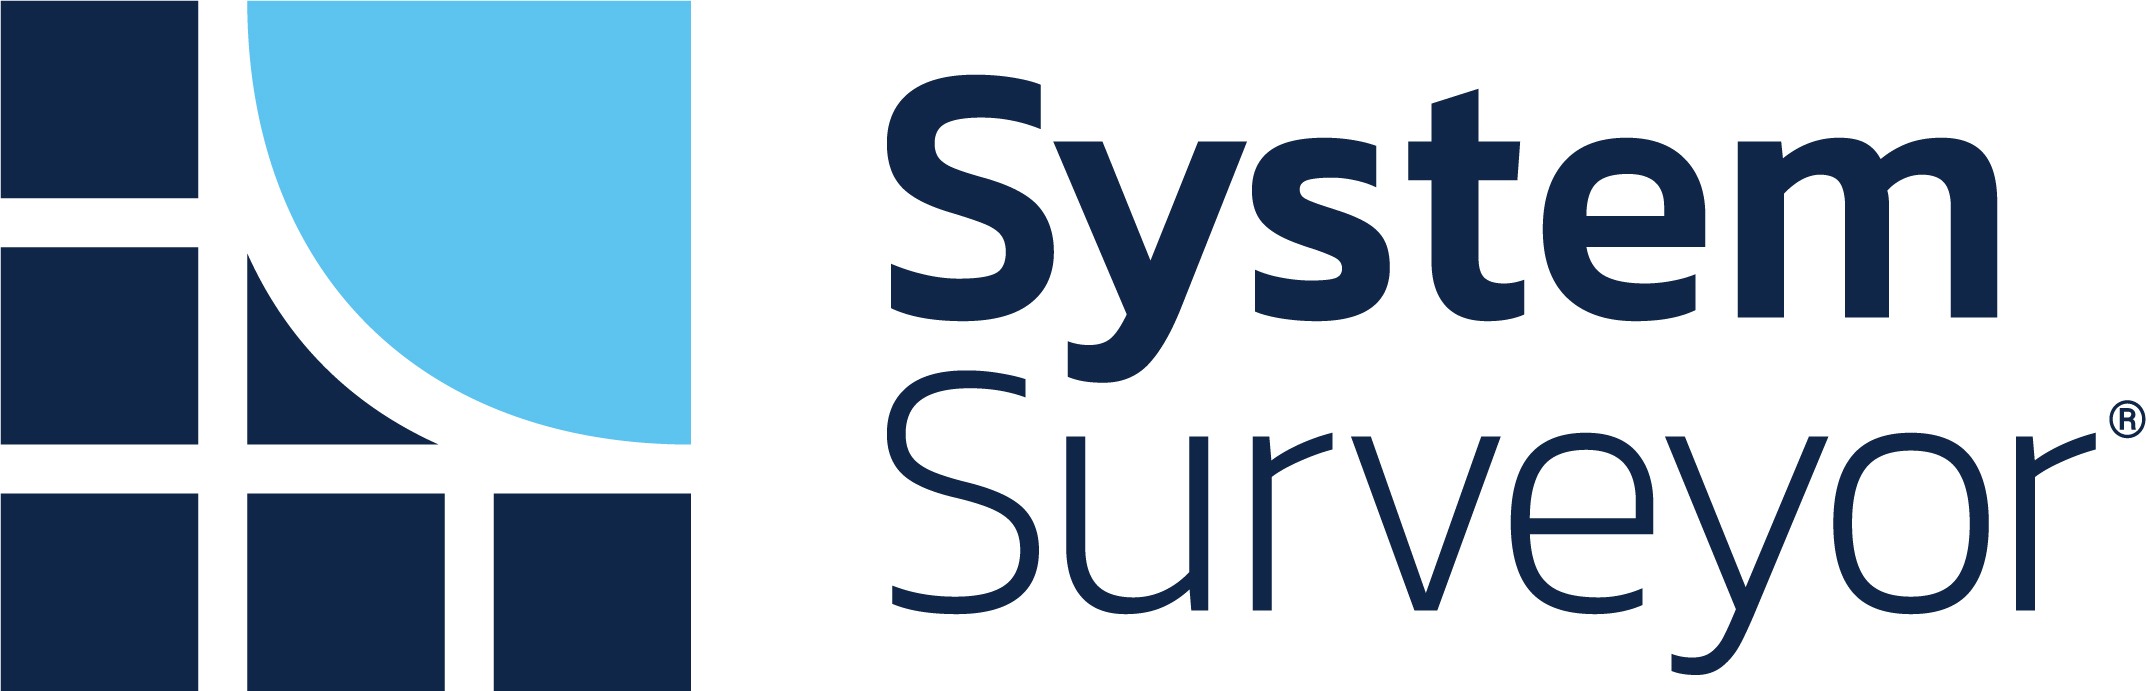 System Surveyor logo